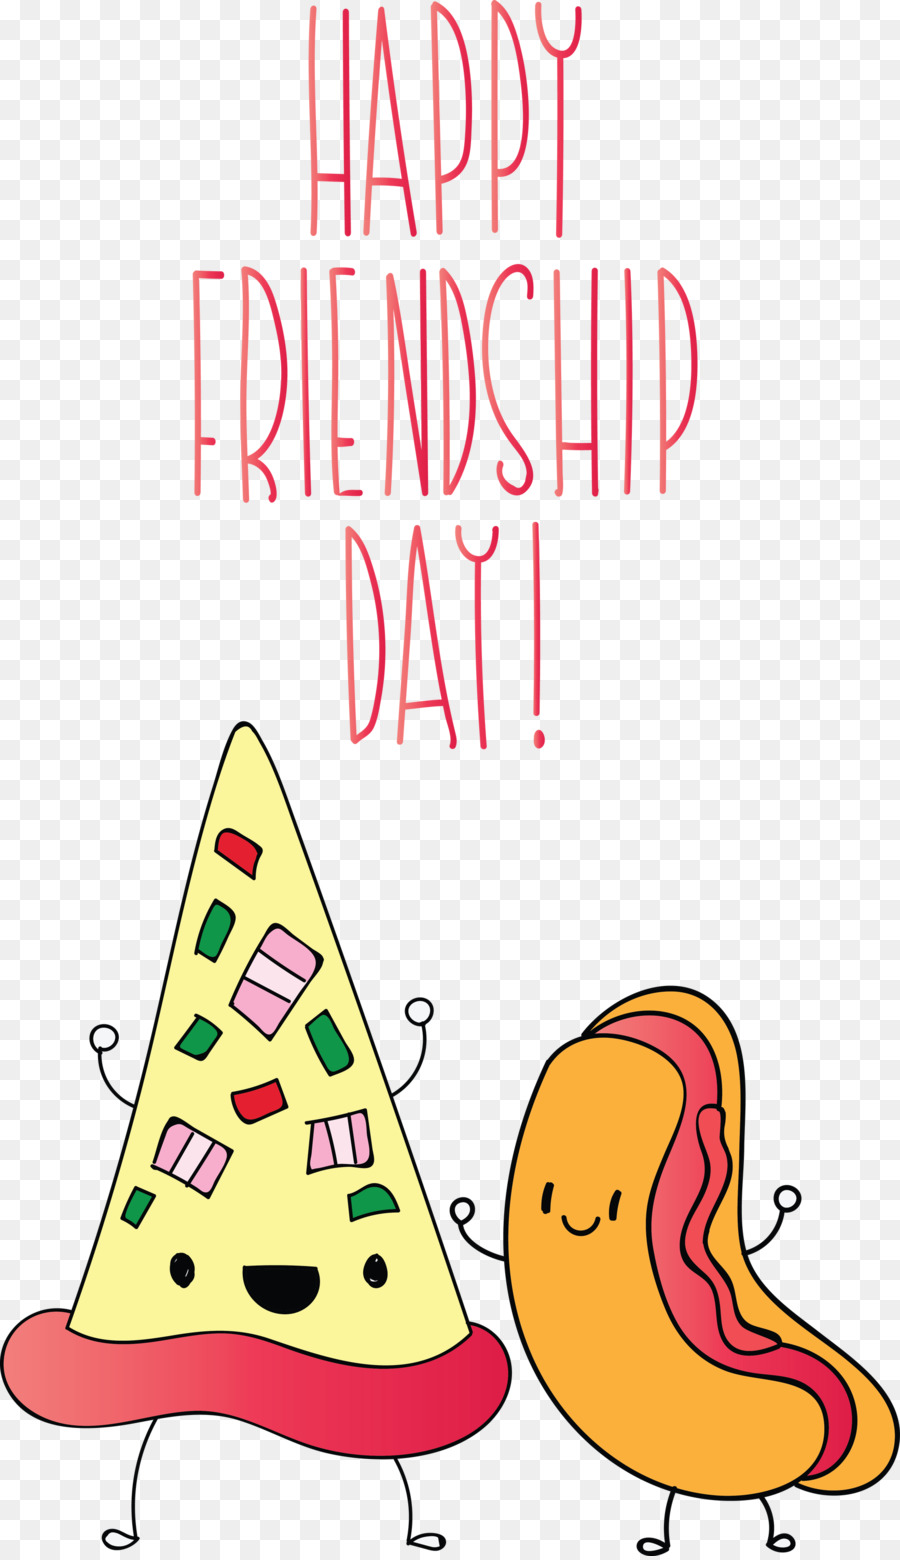 Friendship Day Happy Friendship Day Giornata internazionale dell'amicizia - 